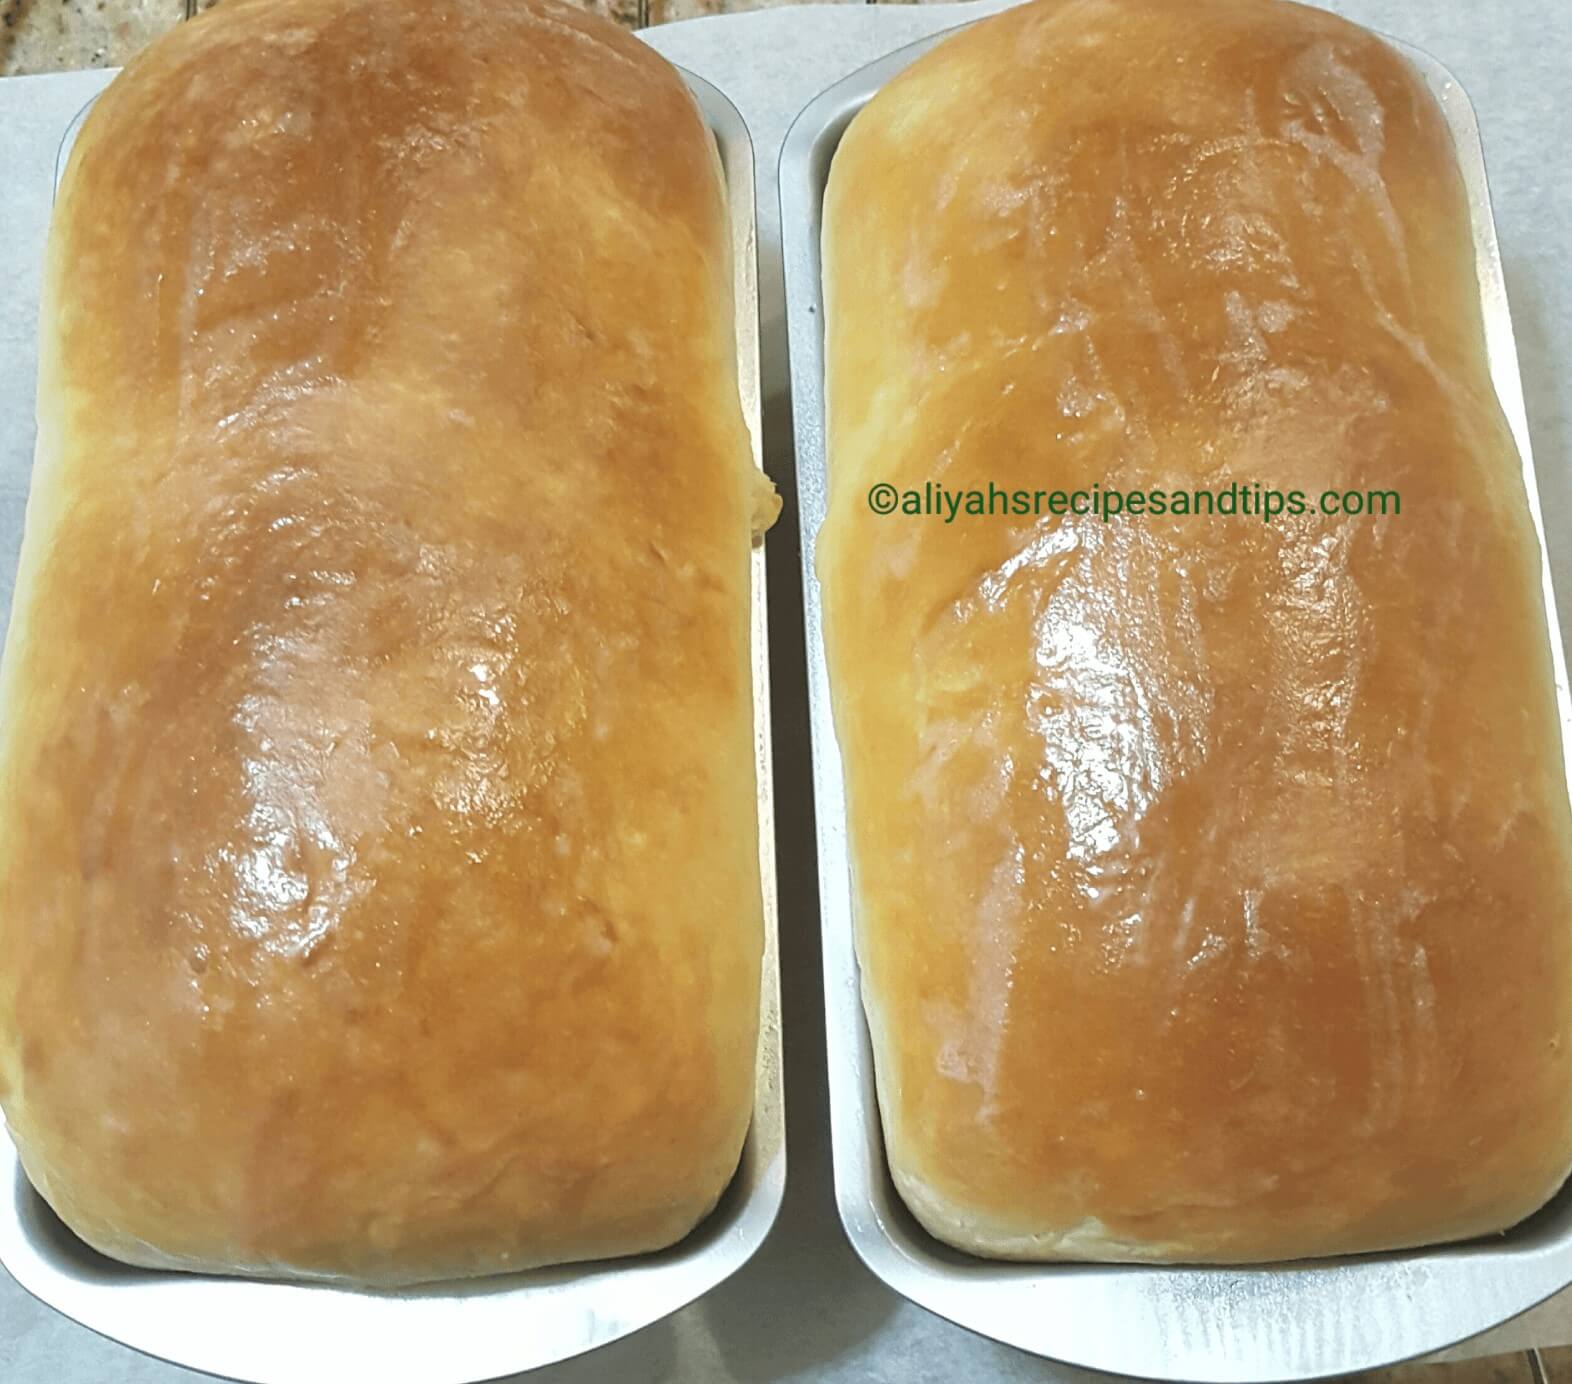 Agege bread, Nigerian agege bread, Agege bread loaf,